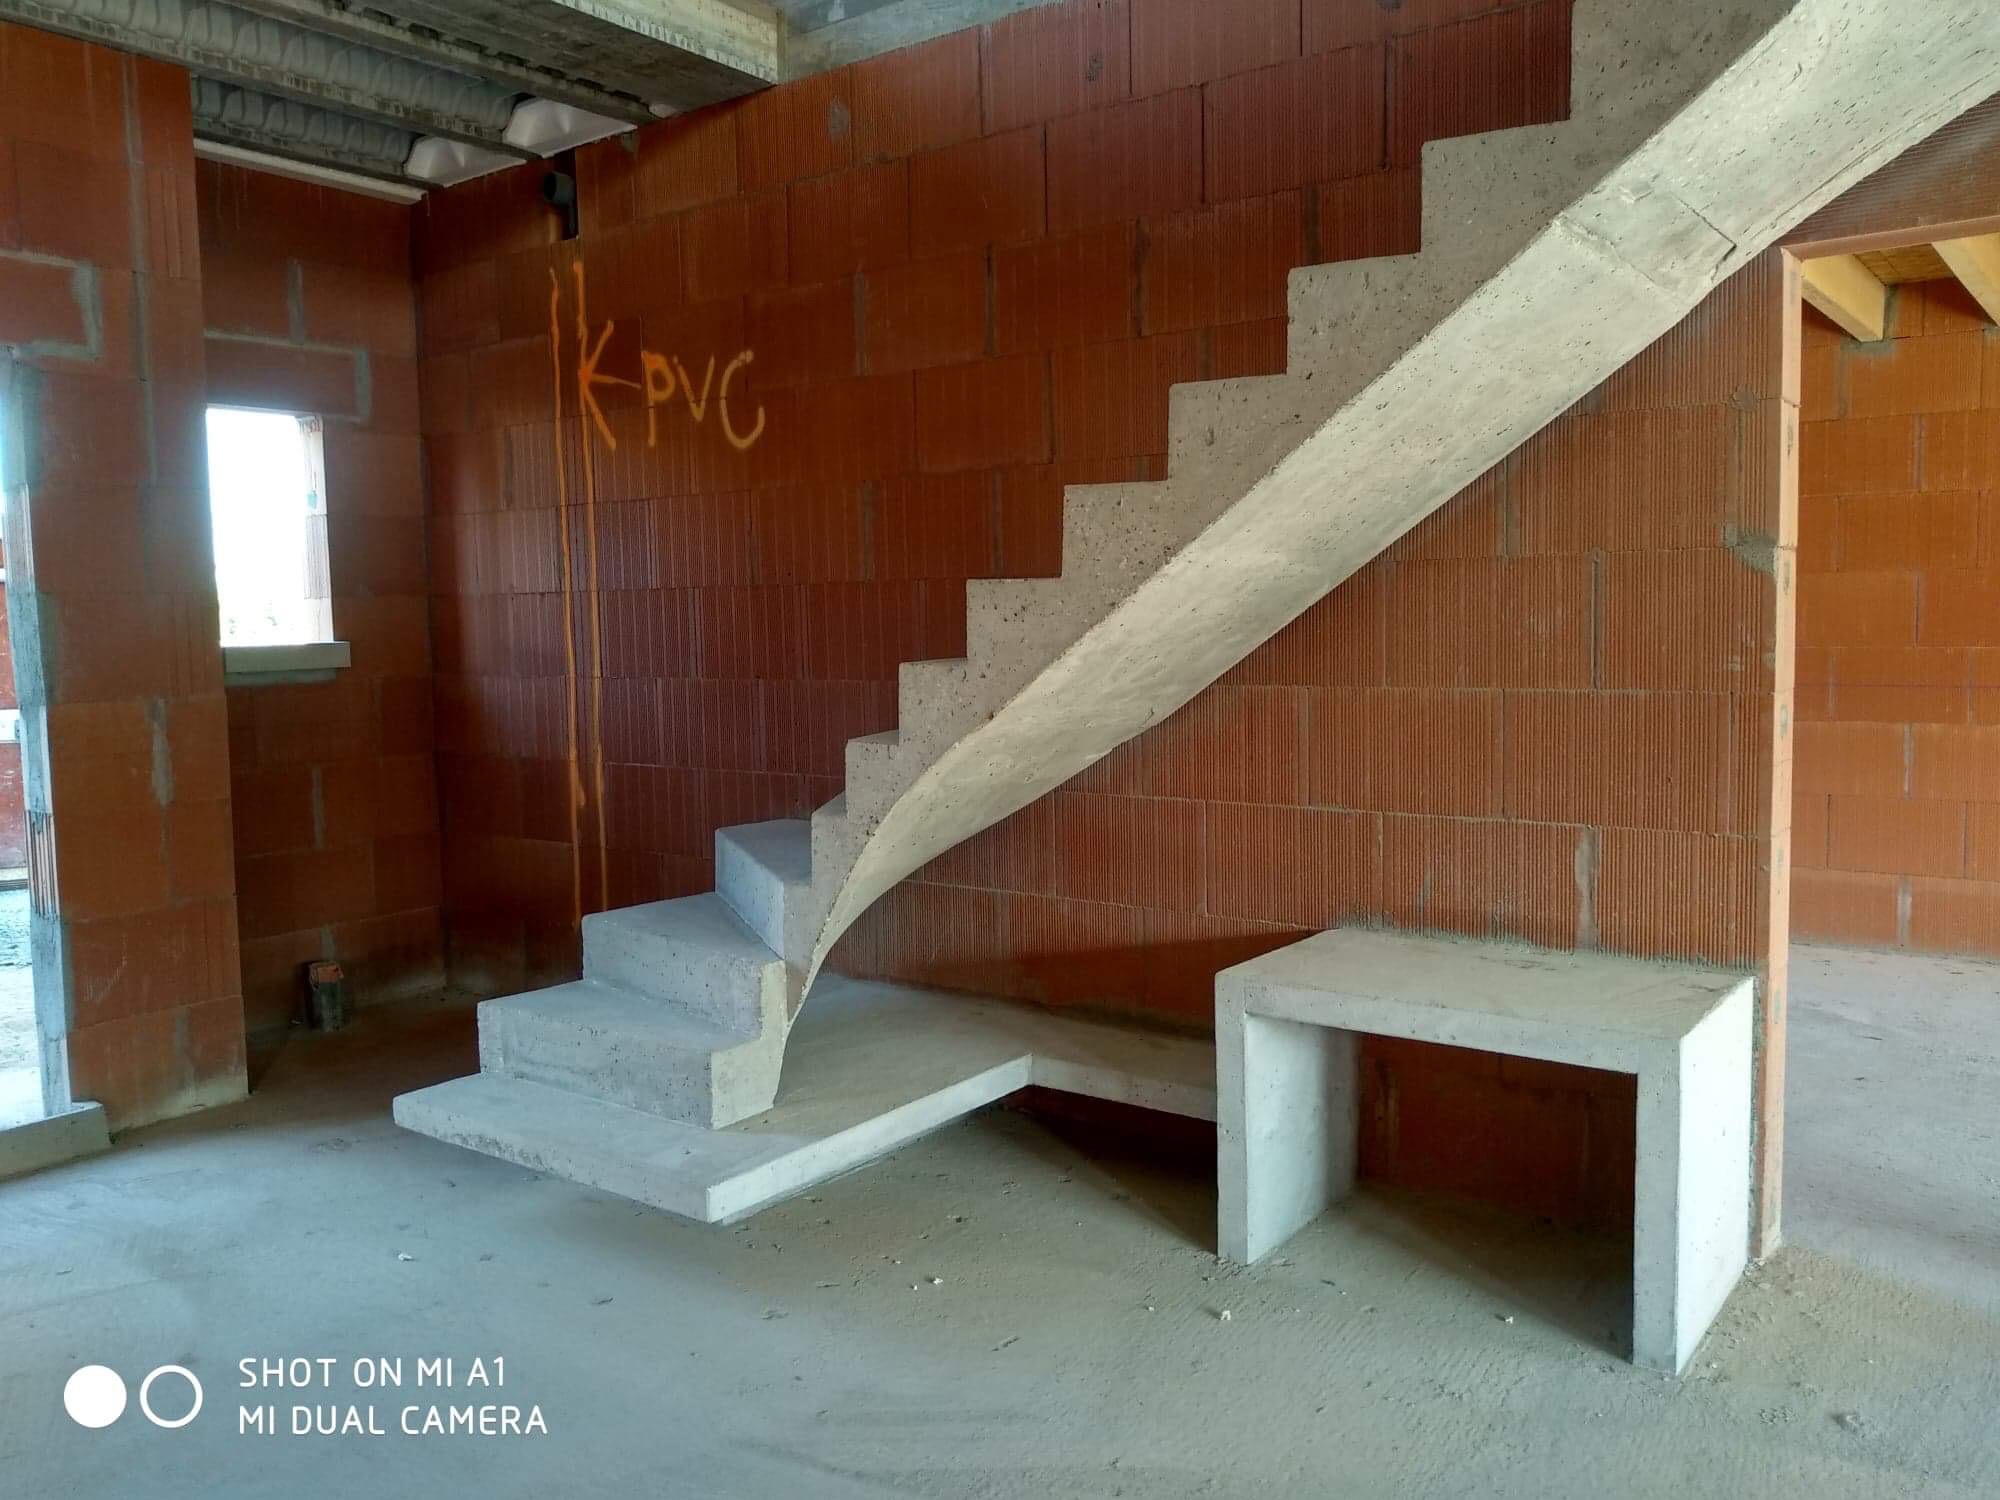 audacieux  escalier graphique avec effet flottant en béton brut de décoffrage  à Bordeaux en Gironde  pour un constructeur